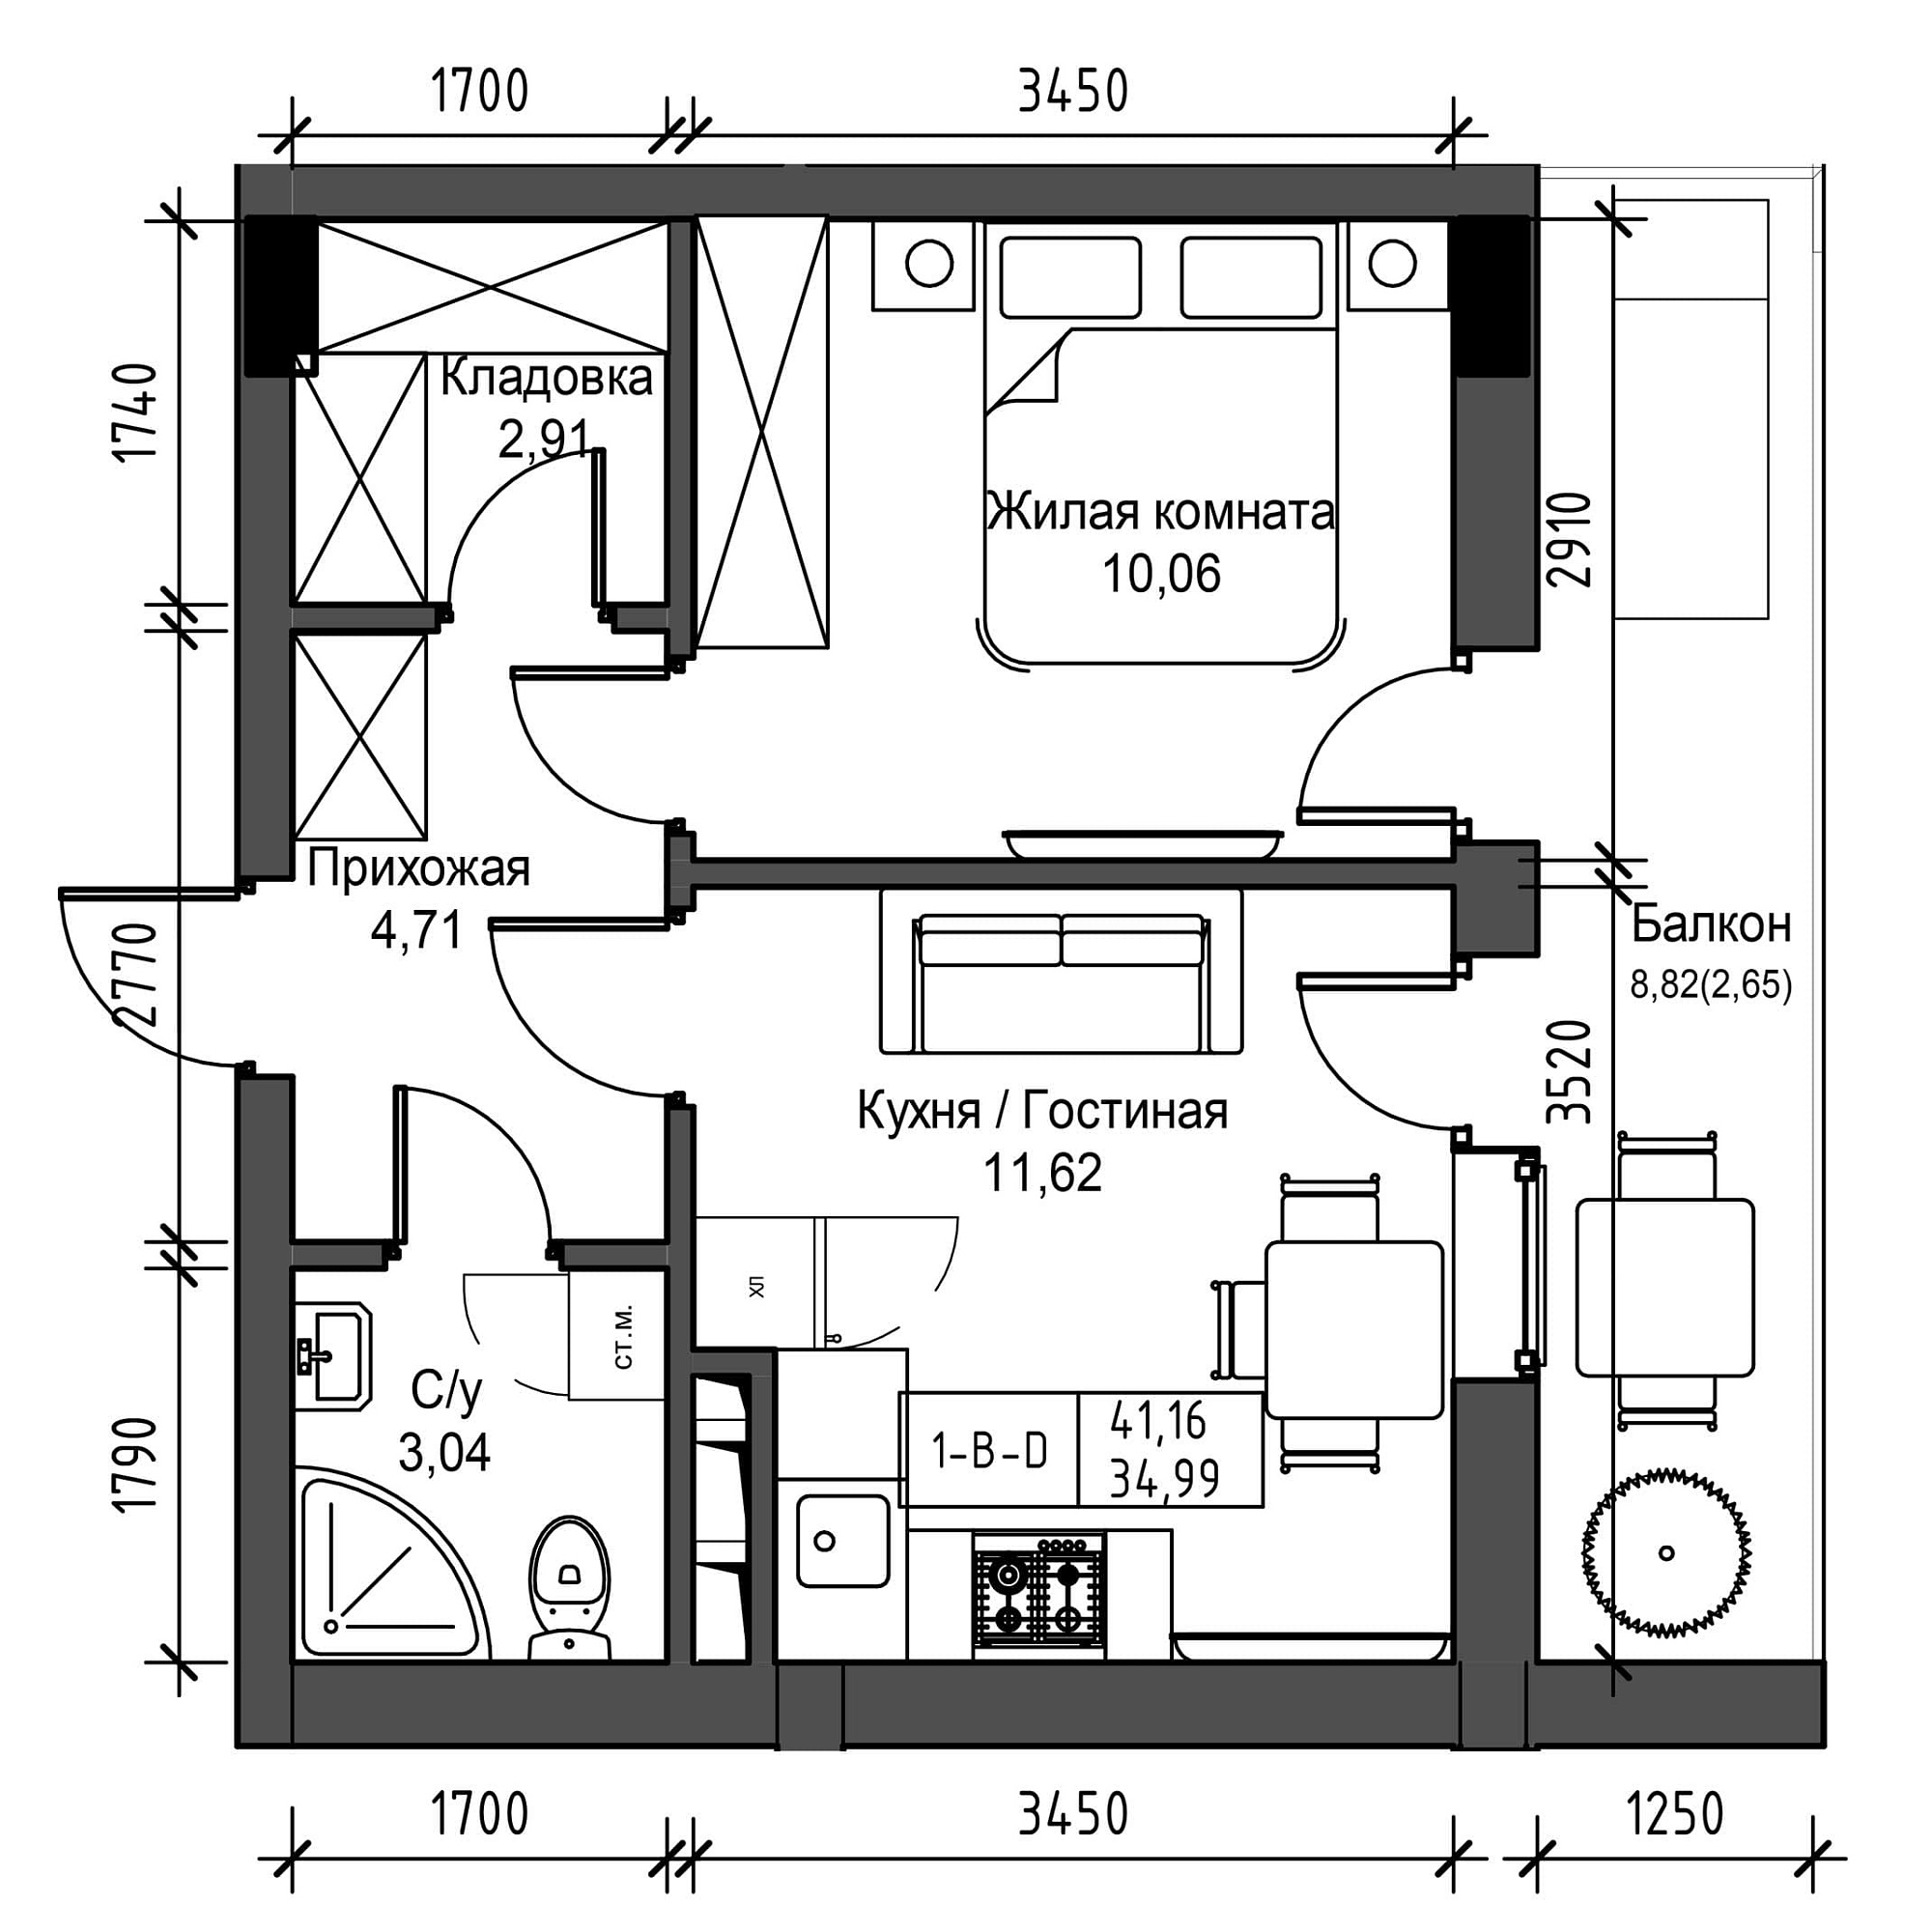 Планировка 1-к квартира площей 34.99м2, UM-001-09/0024.